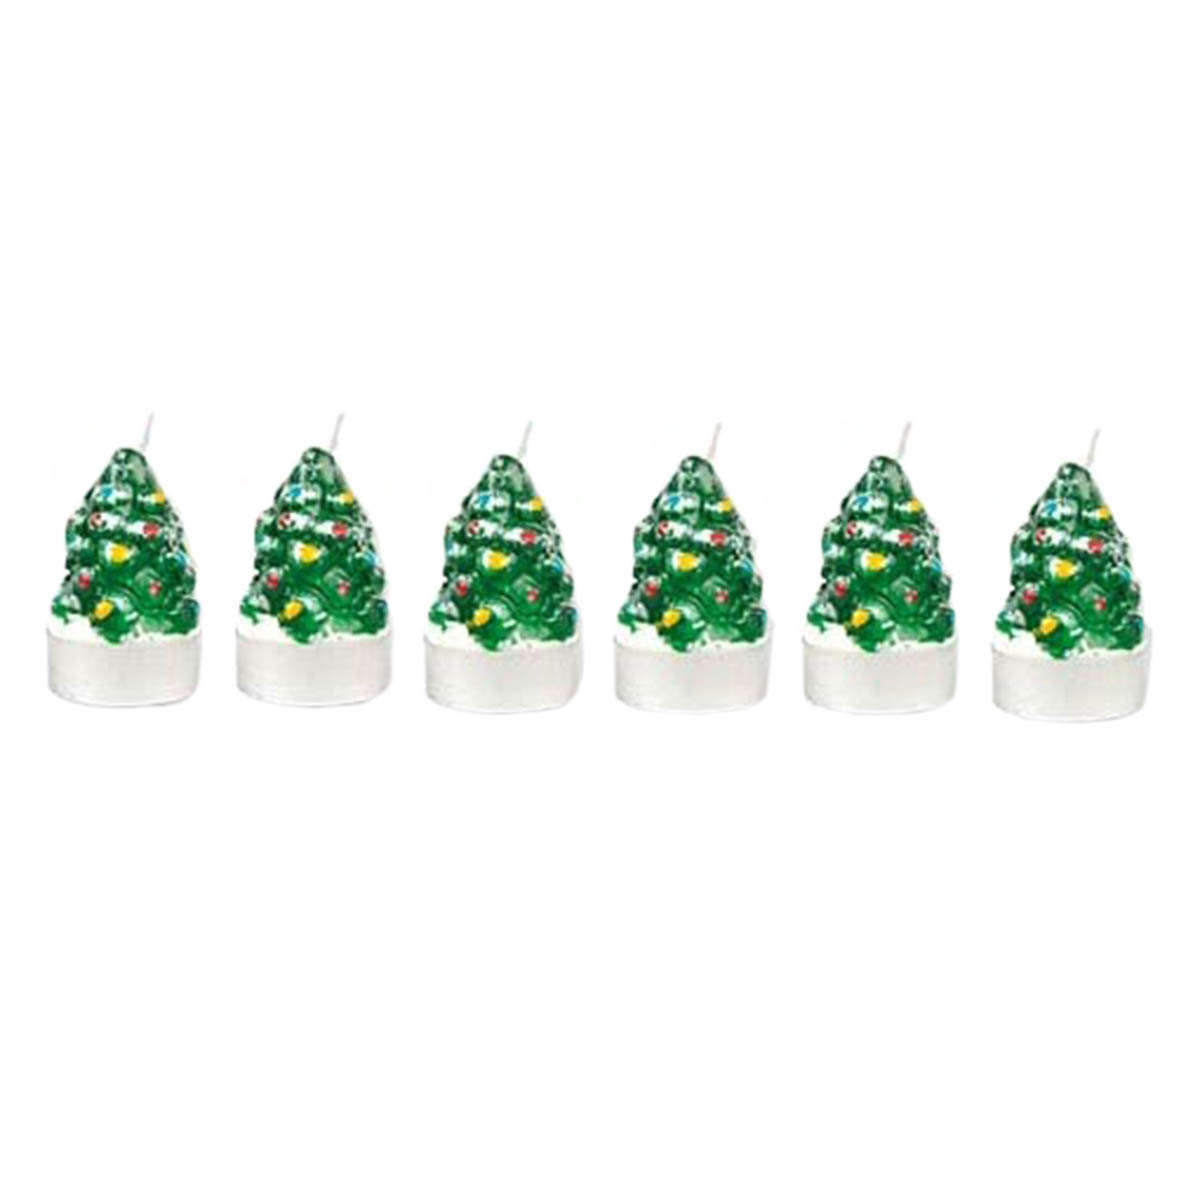 Χριστουγεννιάτικα Κεριά (Σετ 5τμχ) A-S Trees 113559